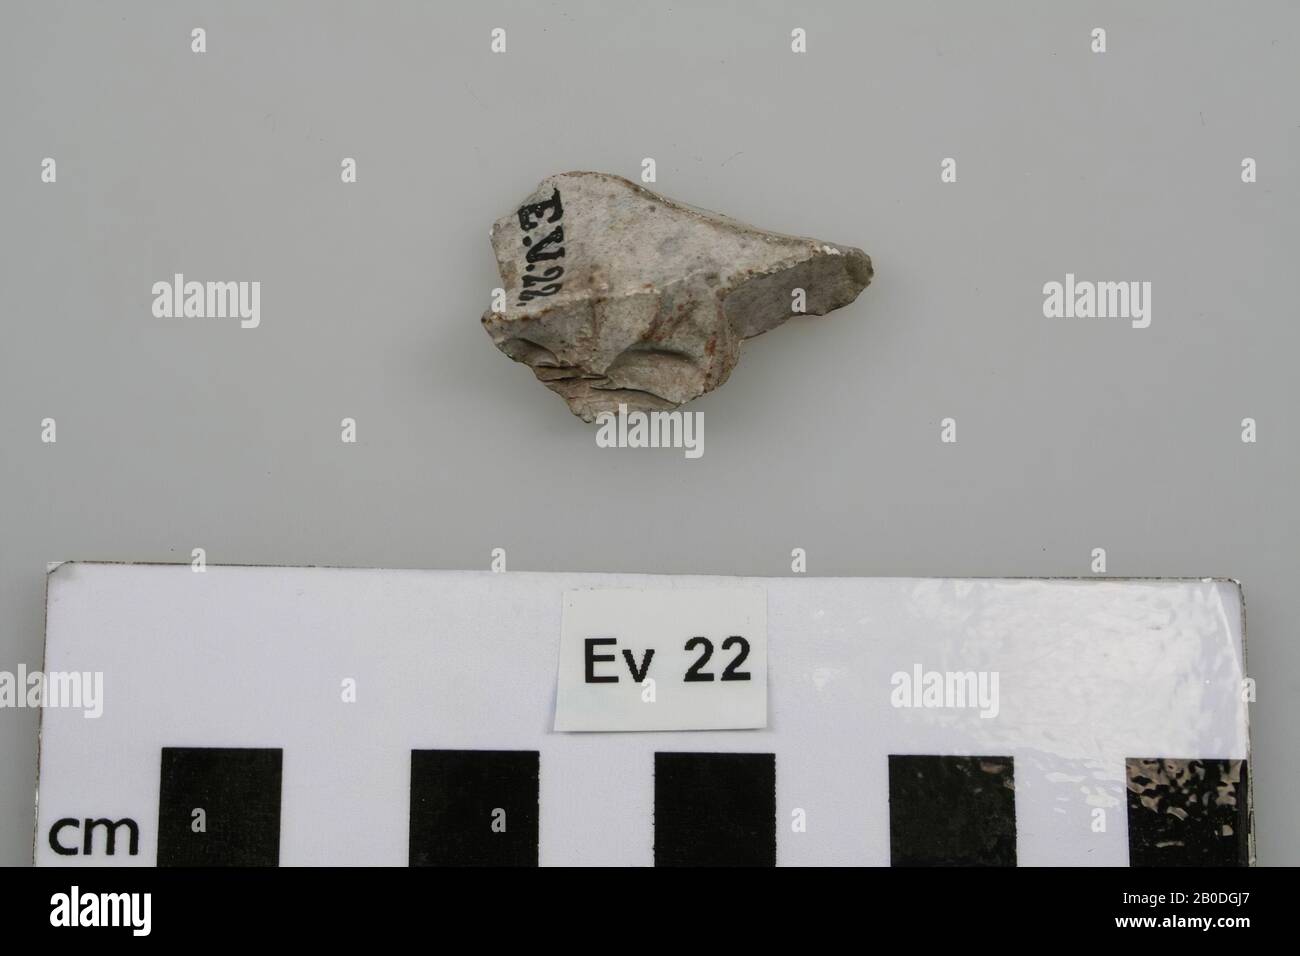 Punta de flecha de Flint, calcinada blanca., Arrowhead, piedra, Flint, 1,2 x 2,5 x 3,5 cm, prehistoria, Bélgica, desconocido, desconocido, Spiennes Foto de stock